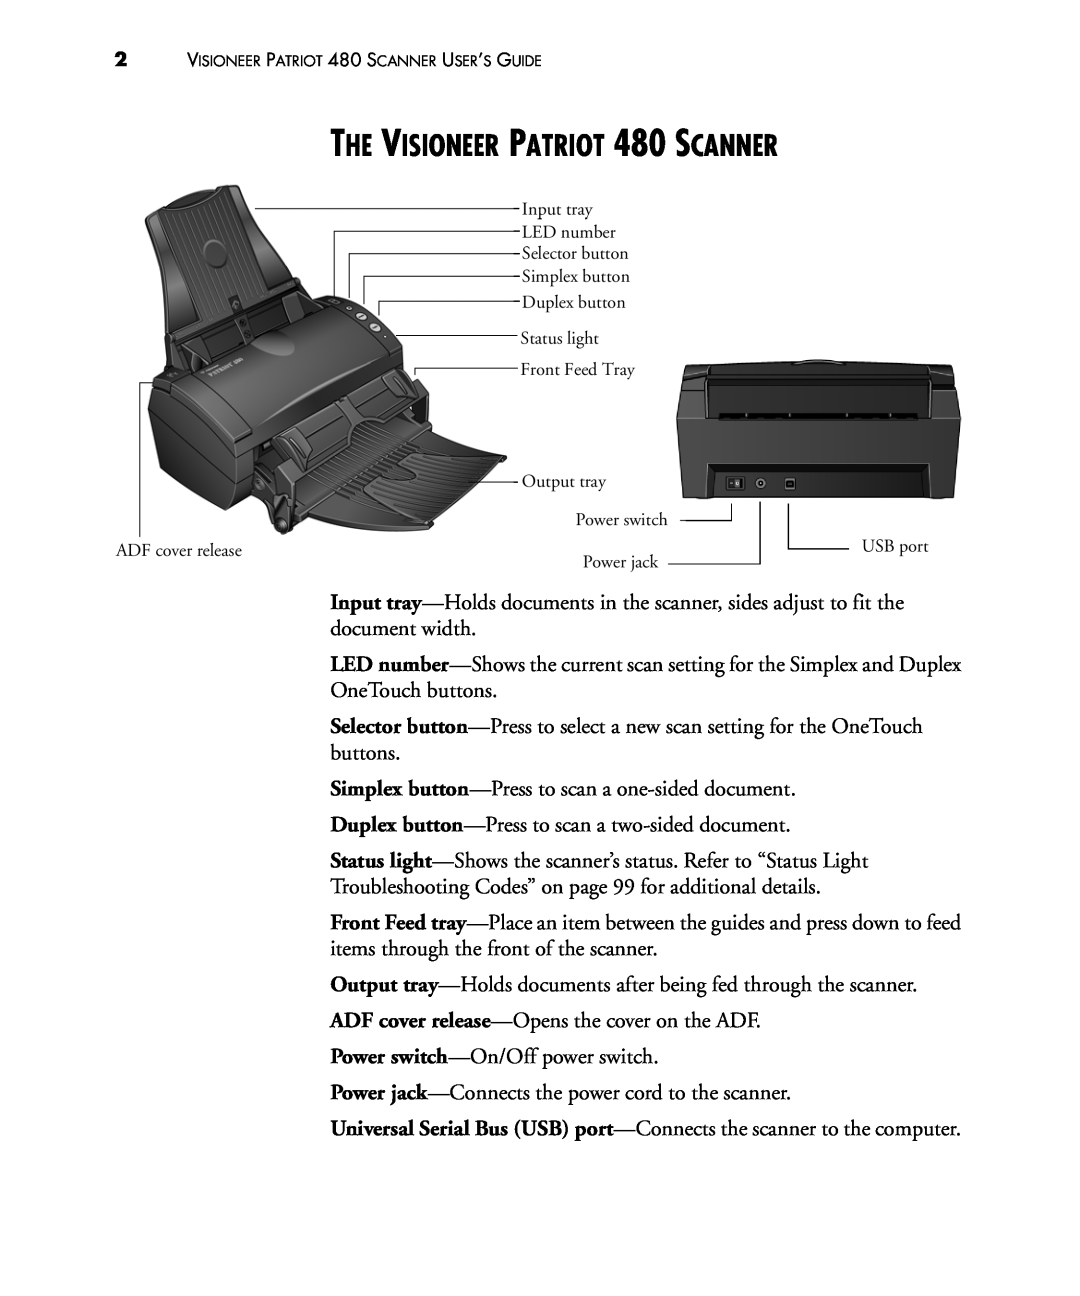 Visioneer manual THE VISIONEER PATRIOT 480 SCANNER 